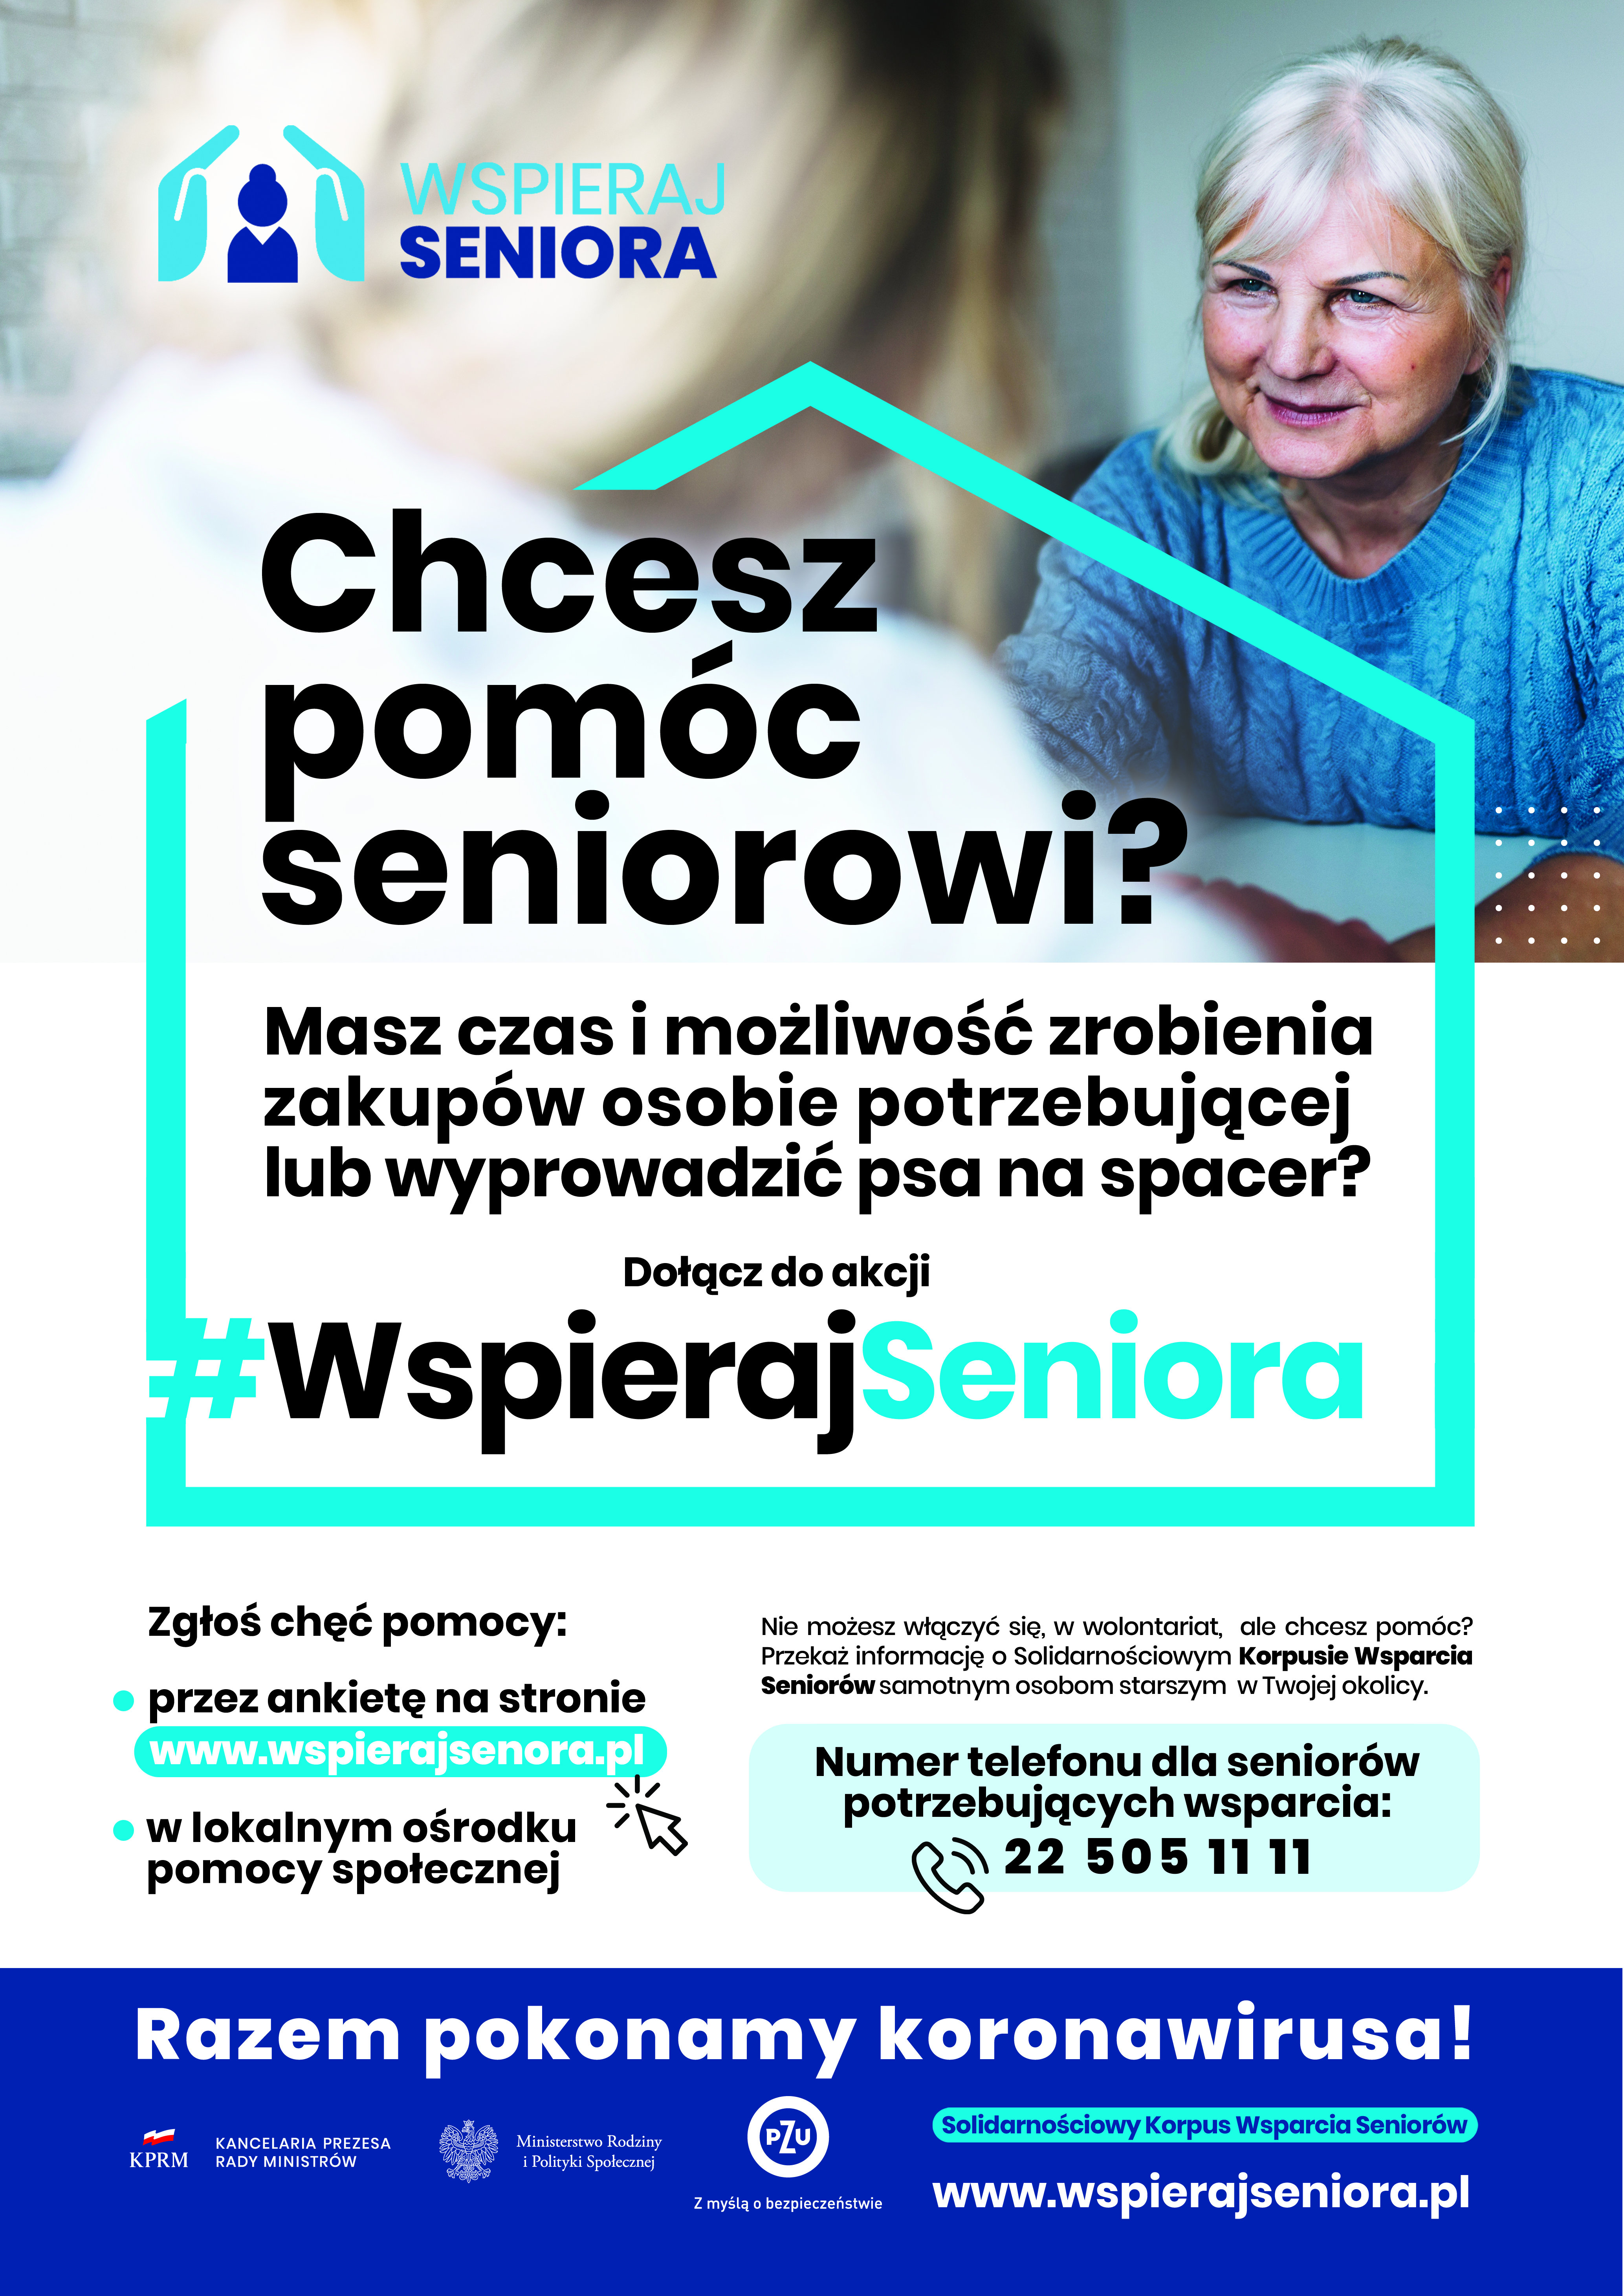 Wspieraj seniora - plakat dla Wolontariuszy